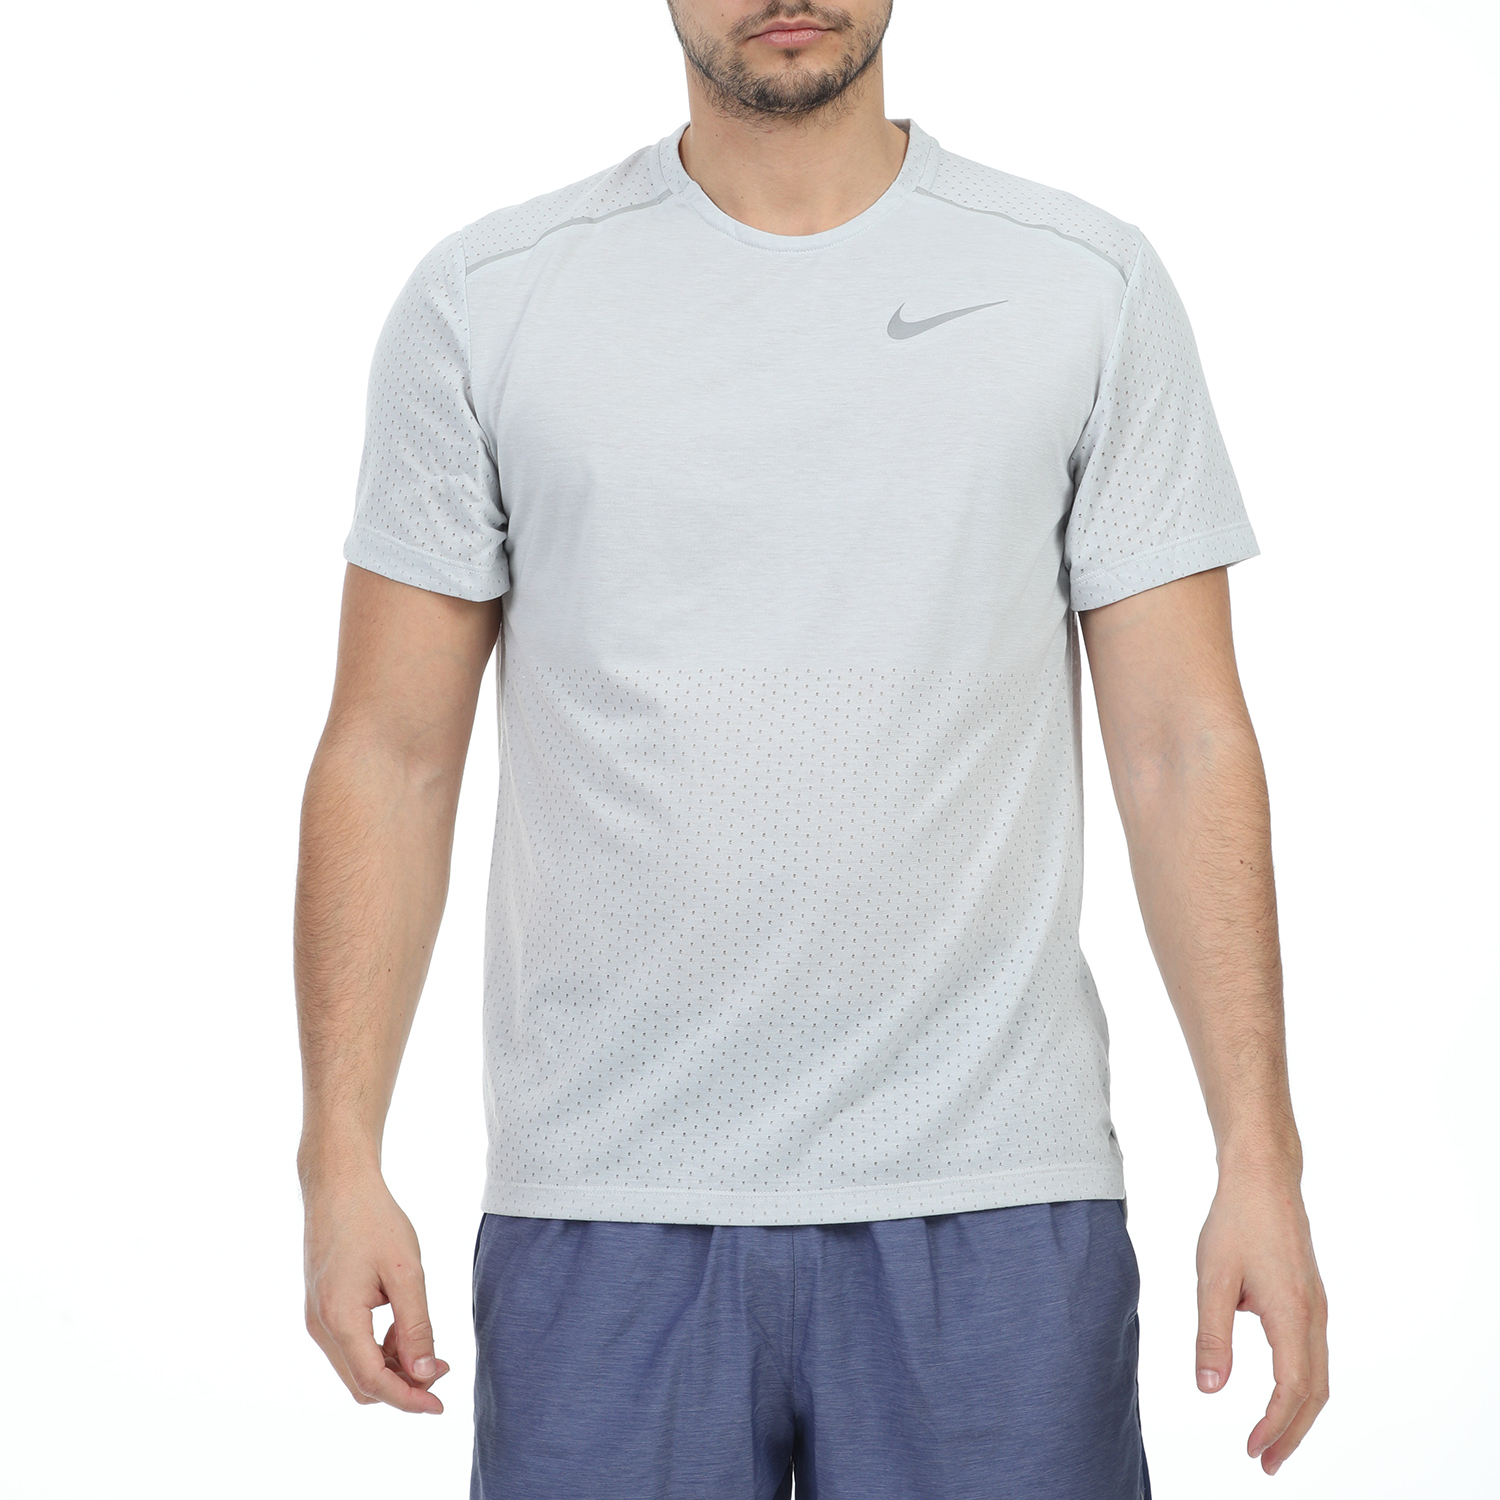 Ανδρικά/Ρούχα/Αθλητικά/T-shirt NIKE - Ανδρική μπλούζα NIKE BRTHE RISE 365 SS μπλε